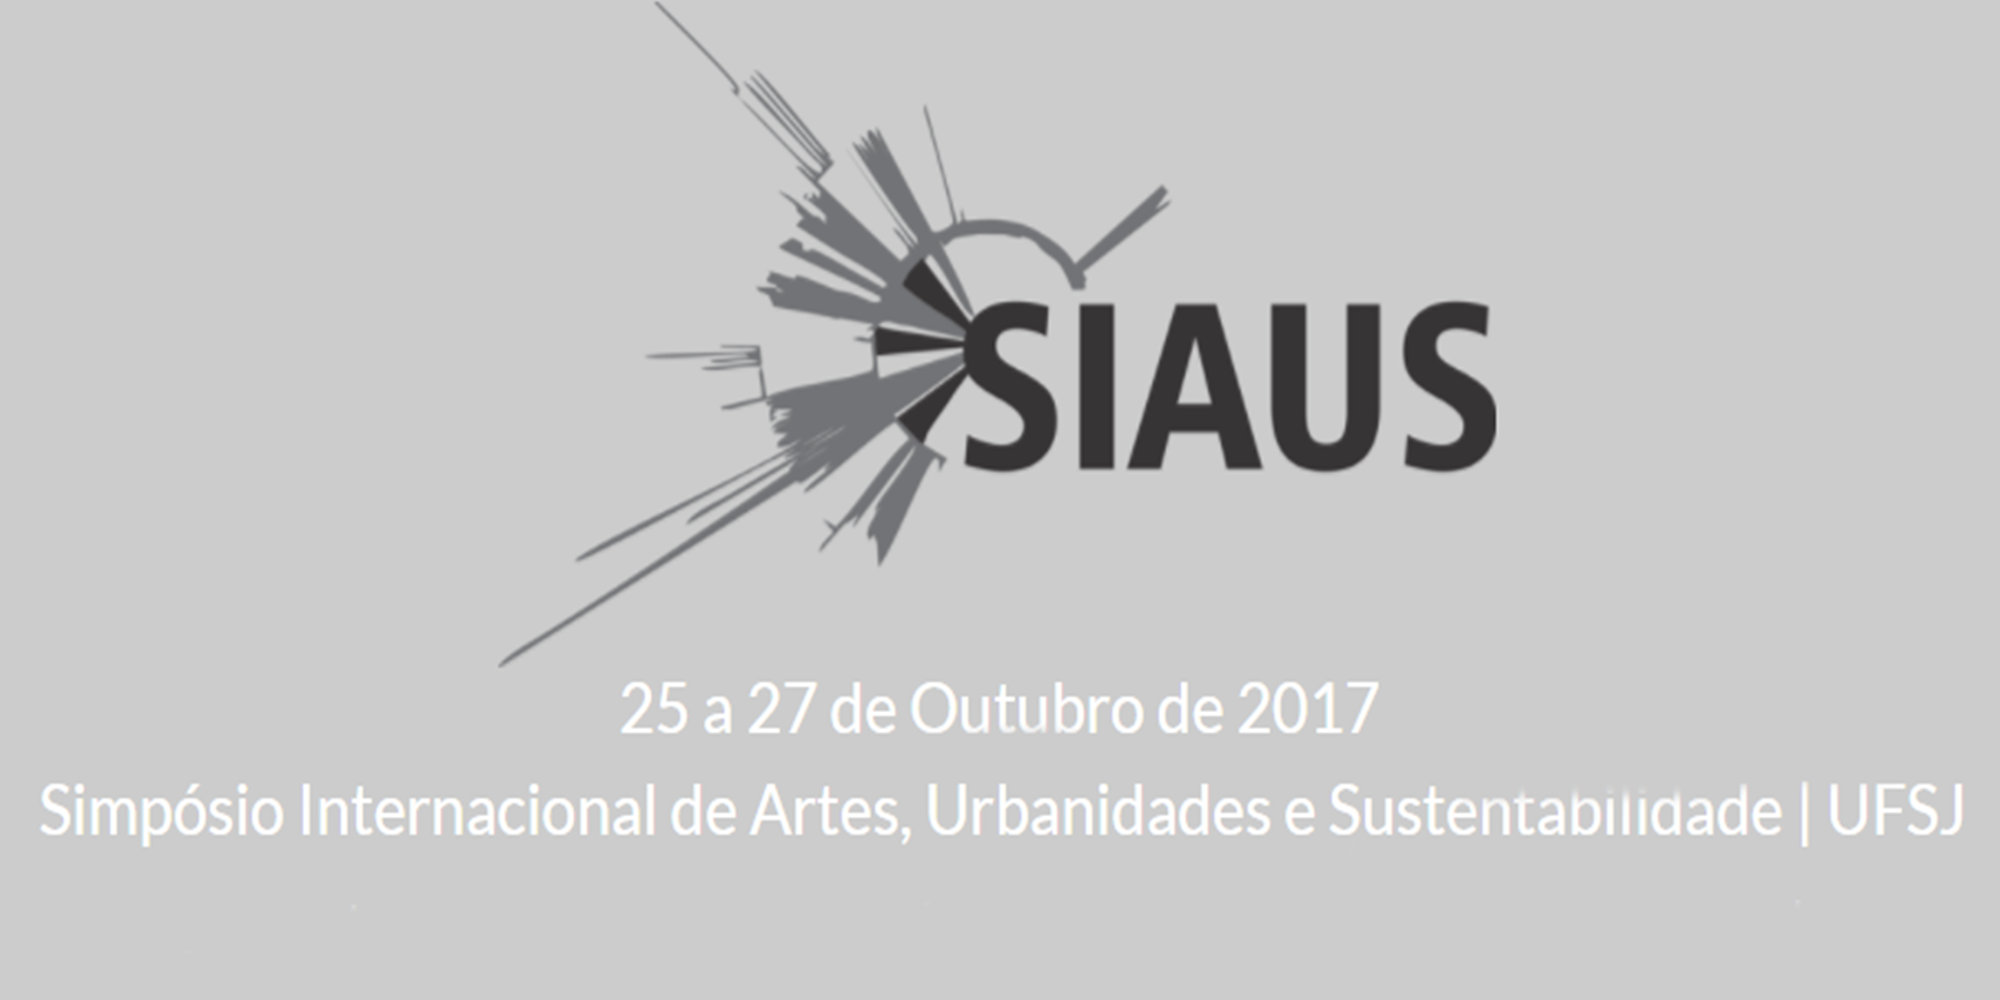 Submissão de trabalhos no 1º Simpósio Internacional: Conectando Artes, Urbanidades e Sustentabilidade, UFSJ